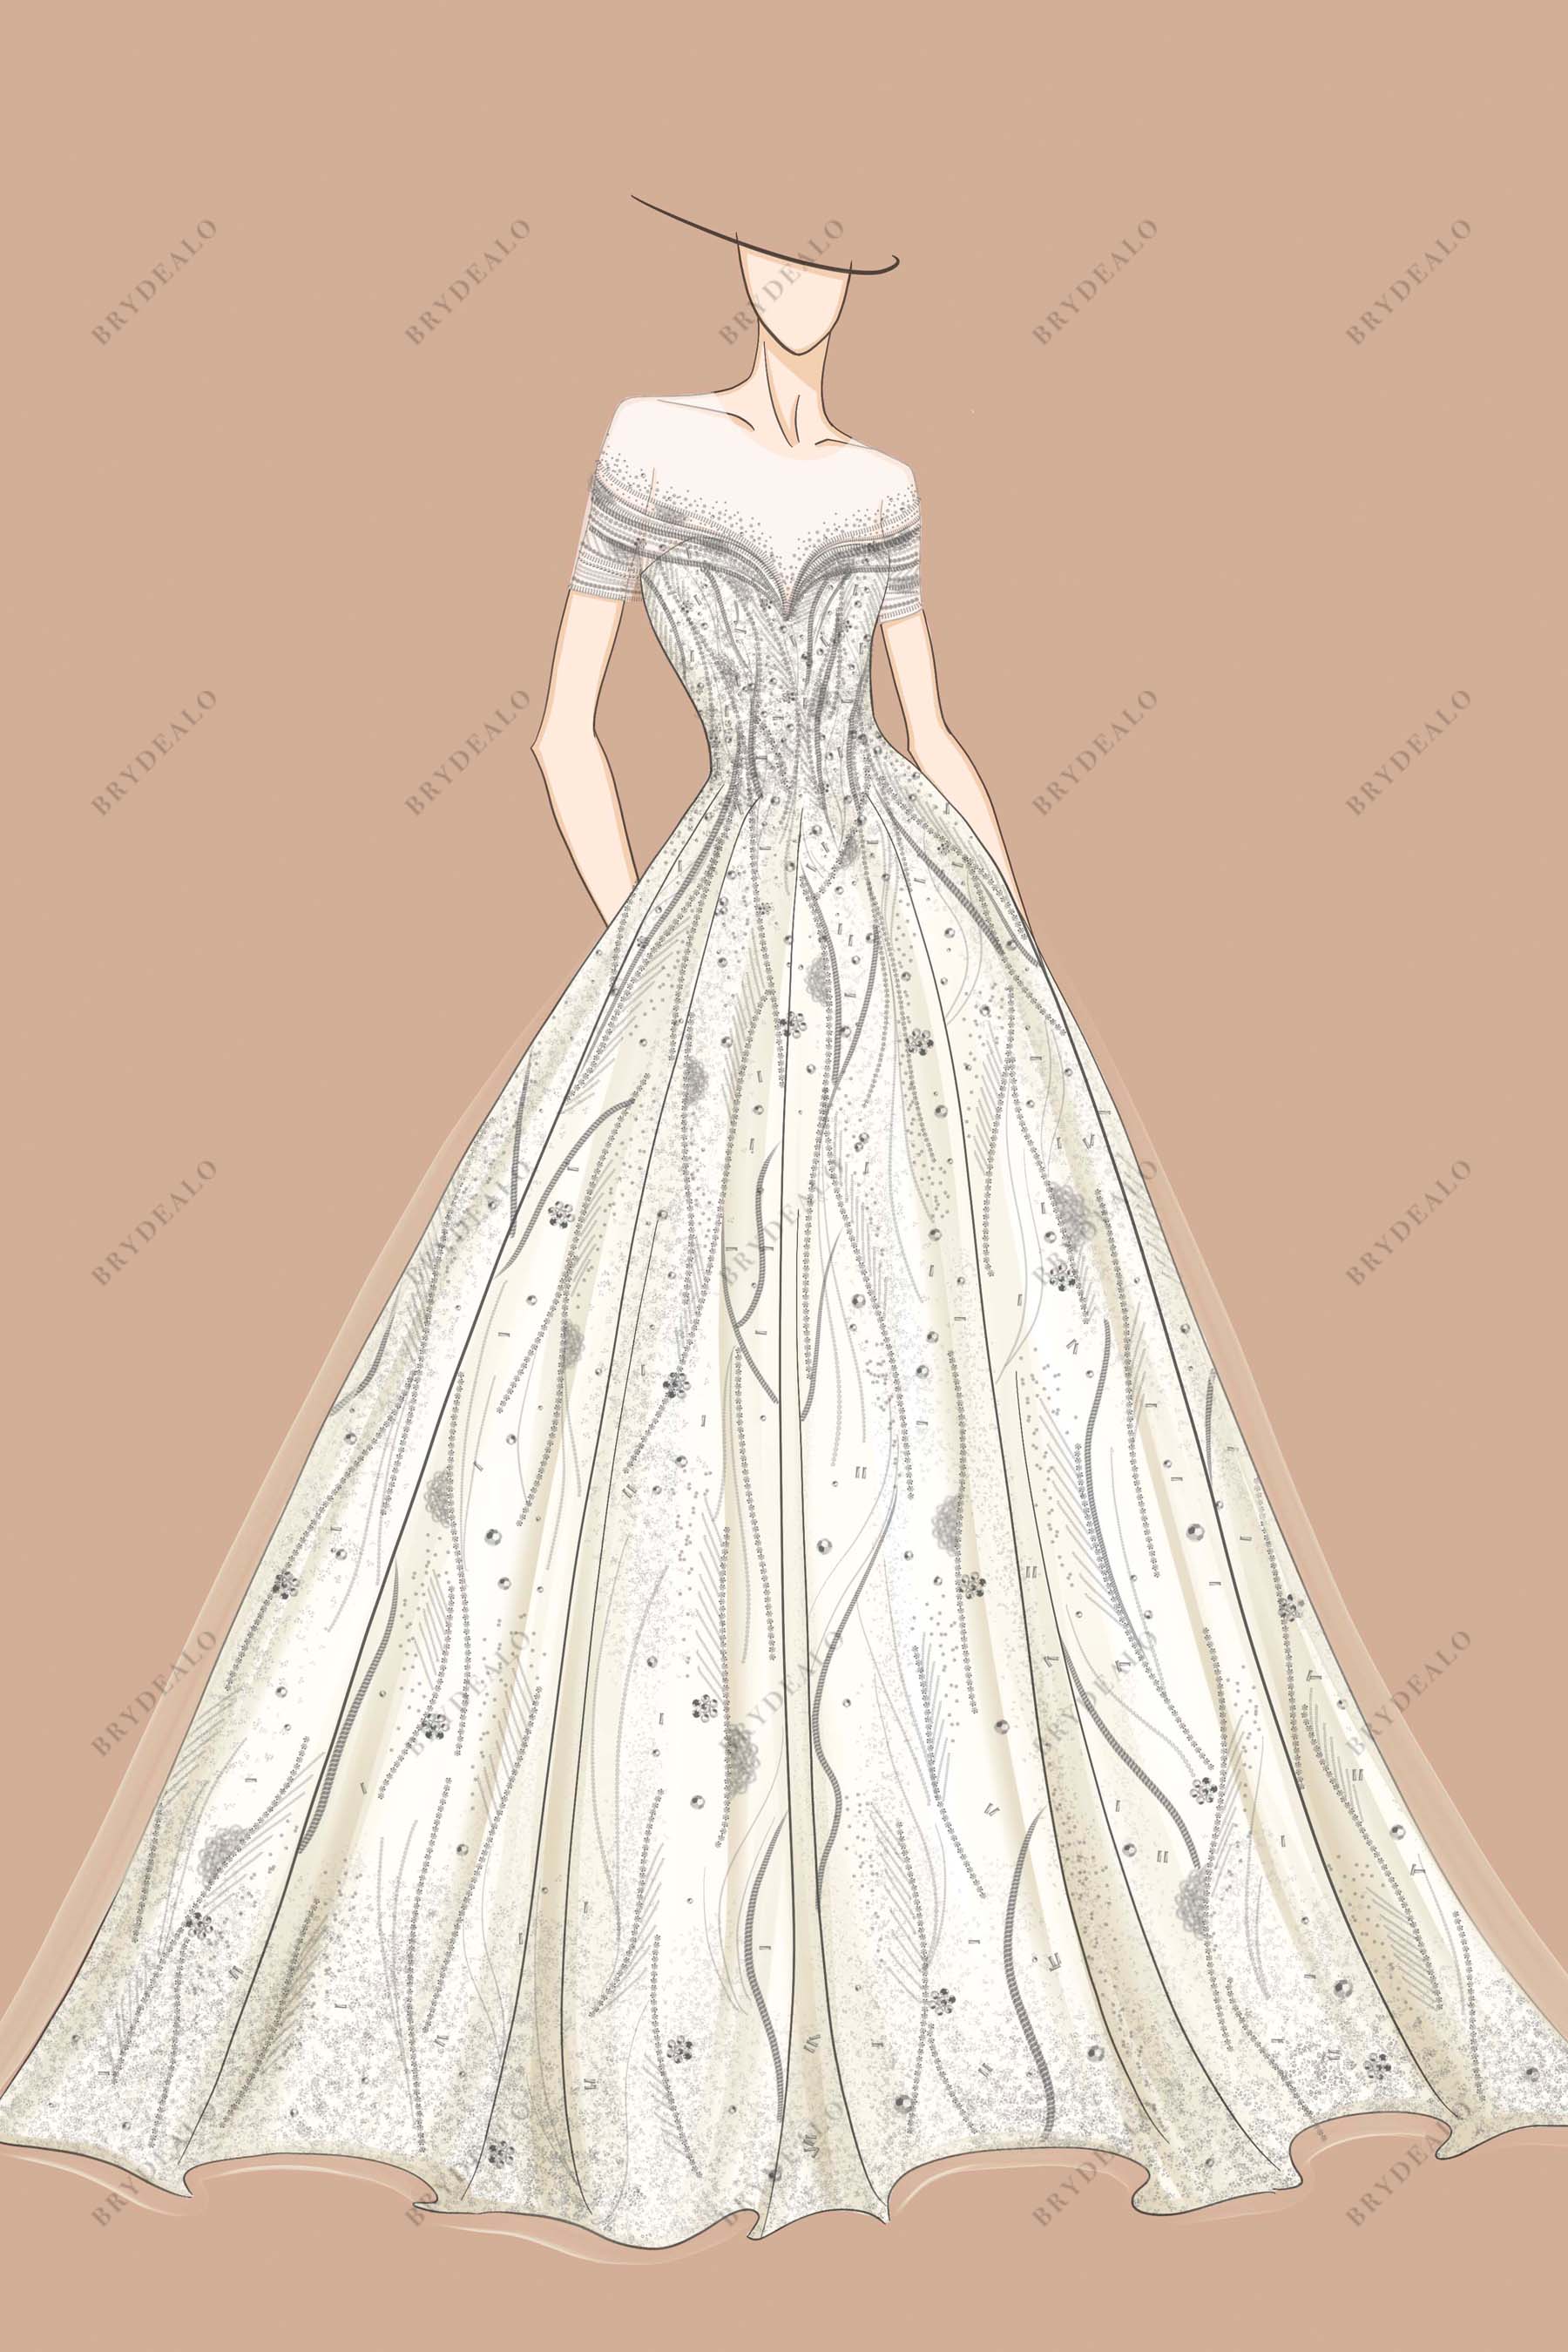 Floral Off Shoulder Bridal Ball Gown Sketch